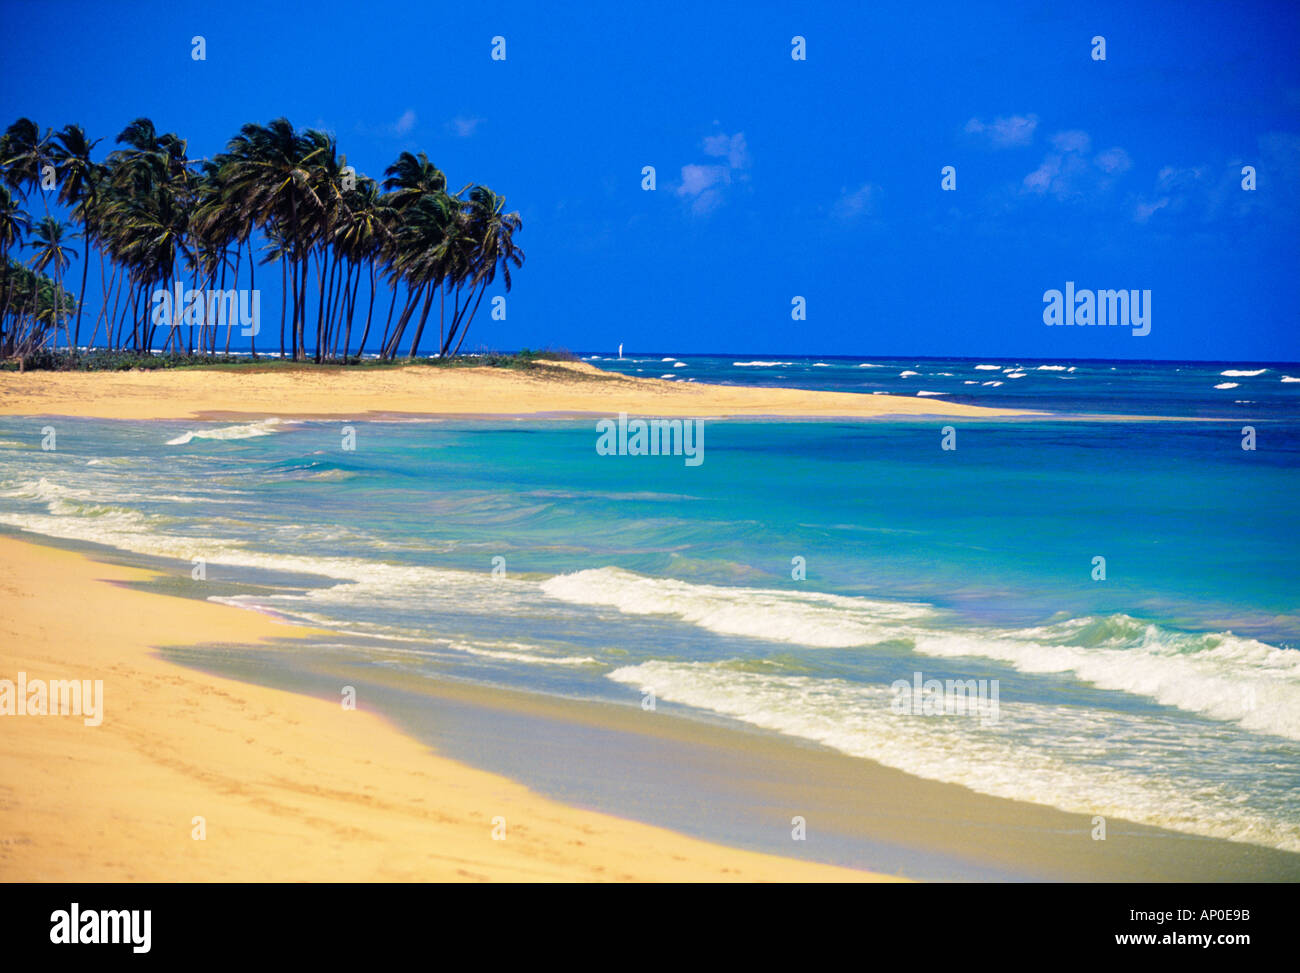 Tropical olas rompiendo en la playa de arena blanca bajo un cielo azul nítido con exuberantes palmeras en Punta Cana República Dominicana Foto de stock